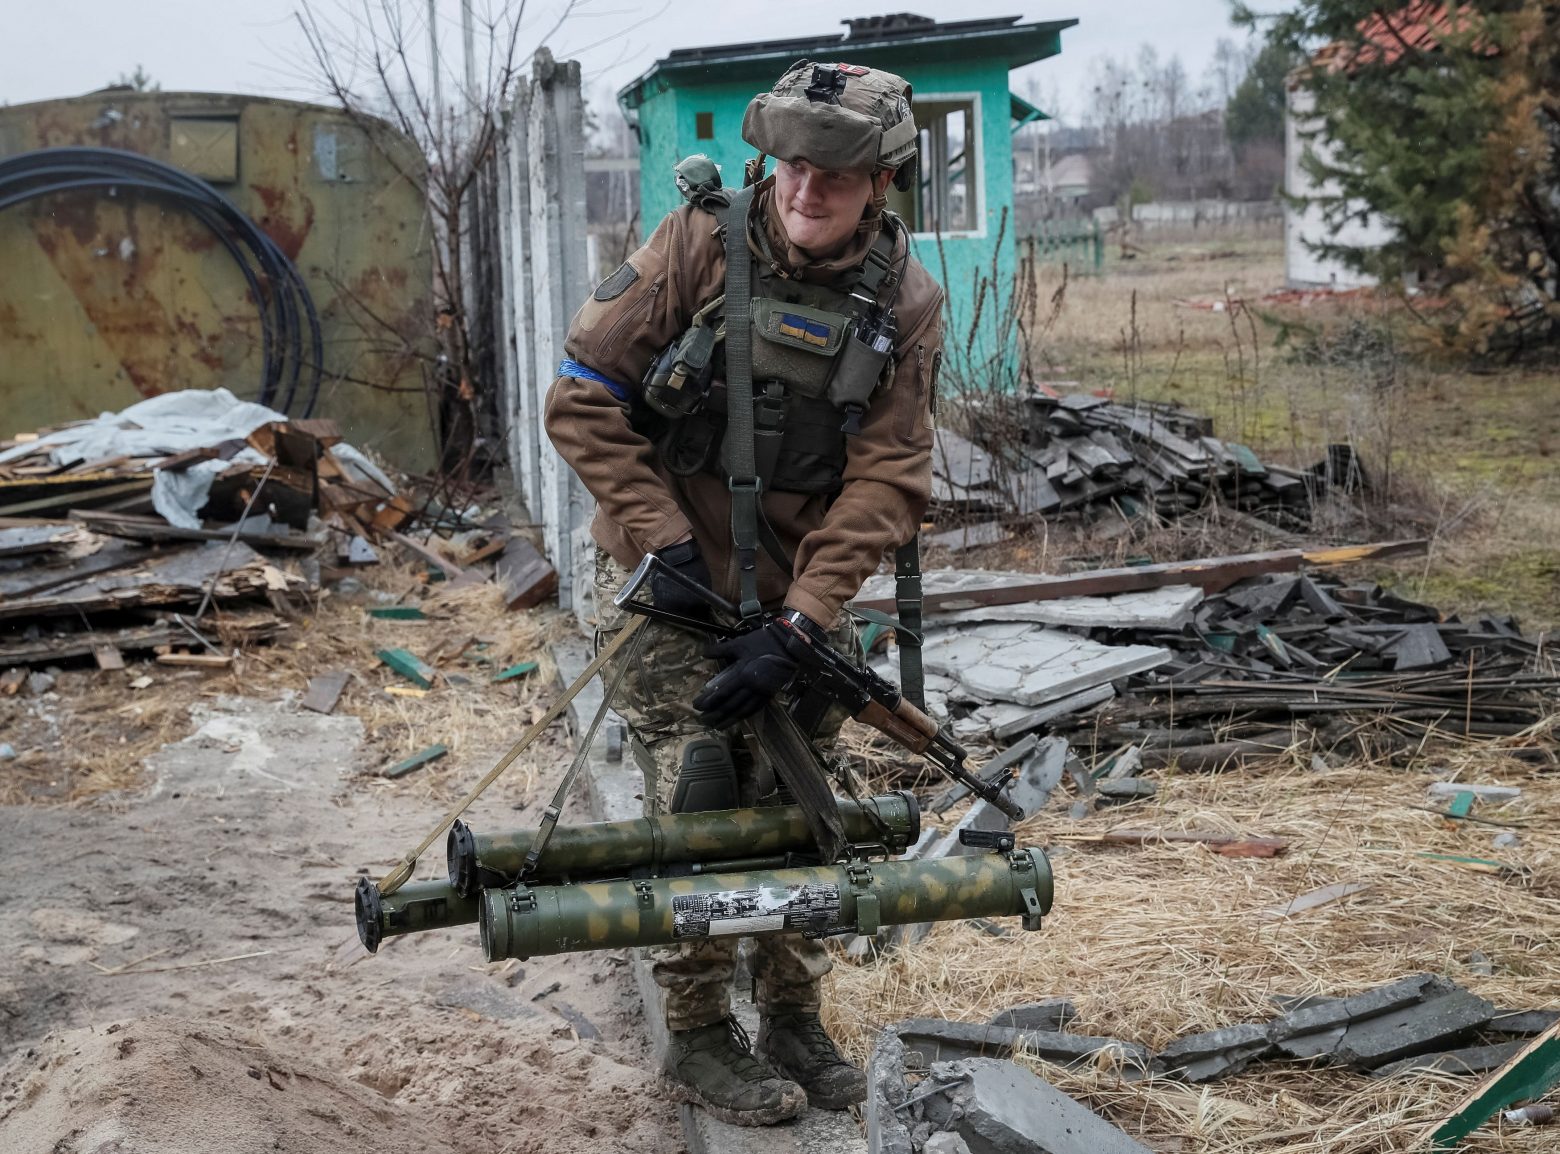 Βρετανία: Στέλνει κι άλλη στρατιωτική βοήθεια στην Ουκρανία - Τι εκτιμά για τις στρατιωτικές επιχειρήσεις